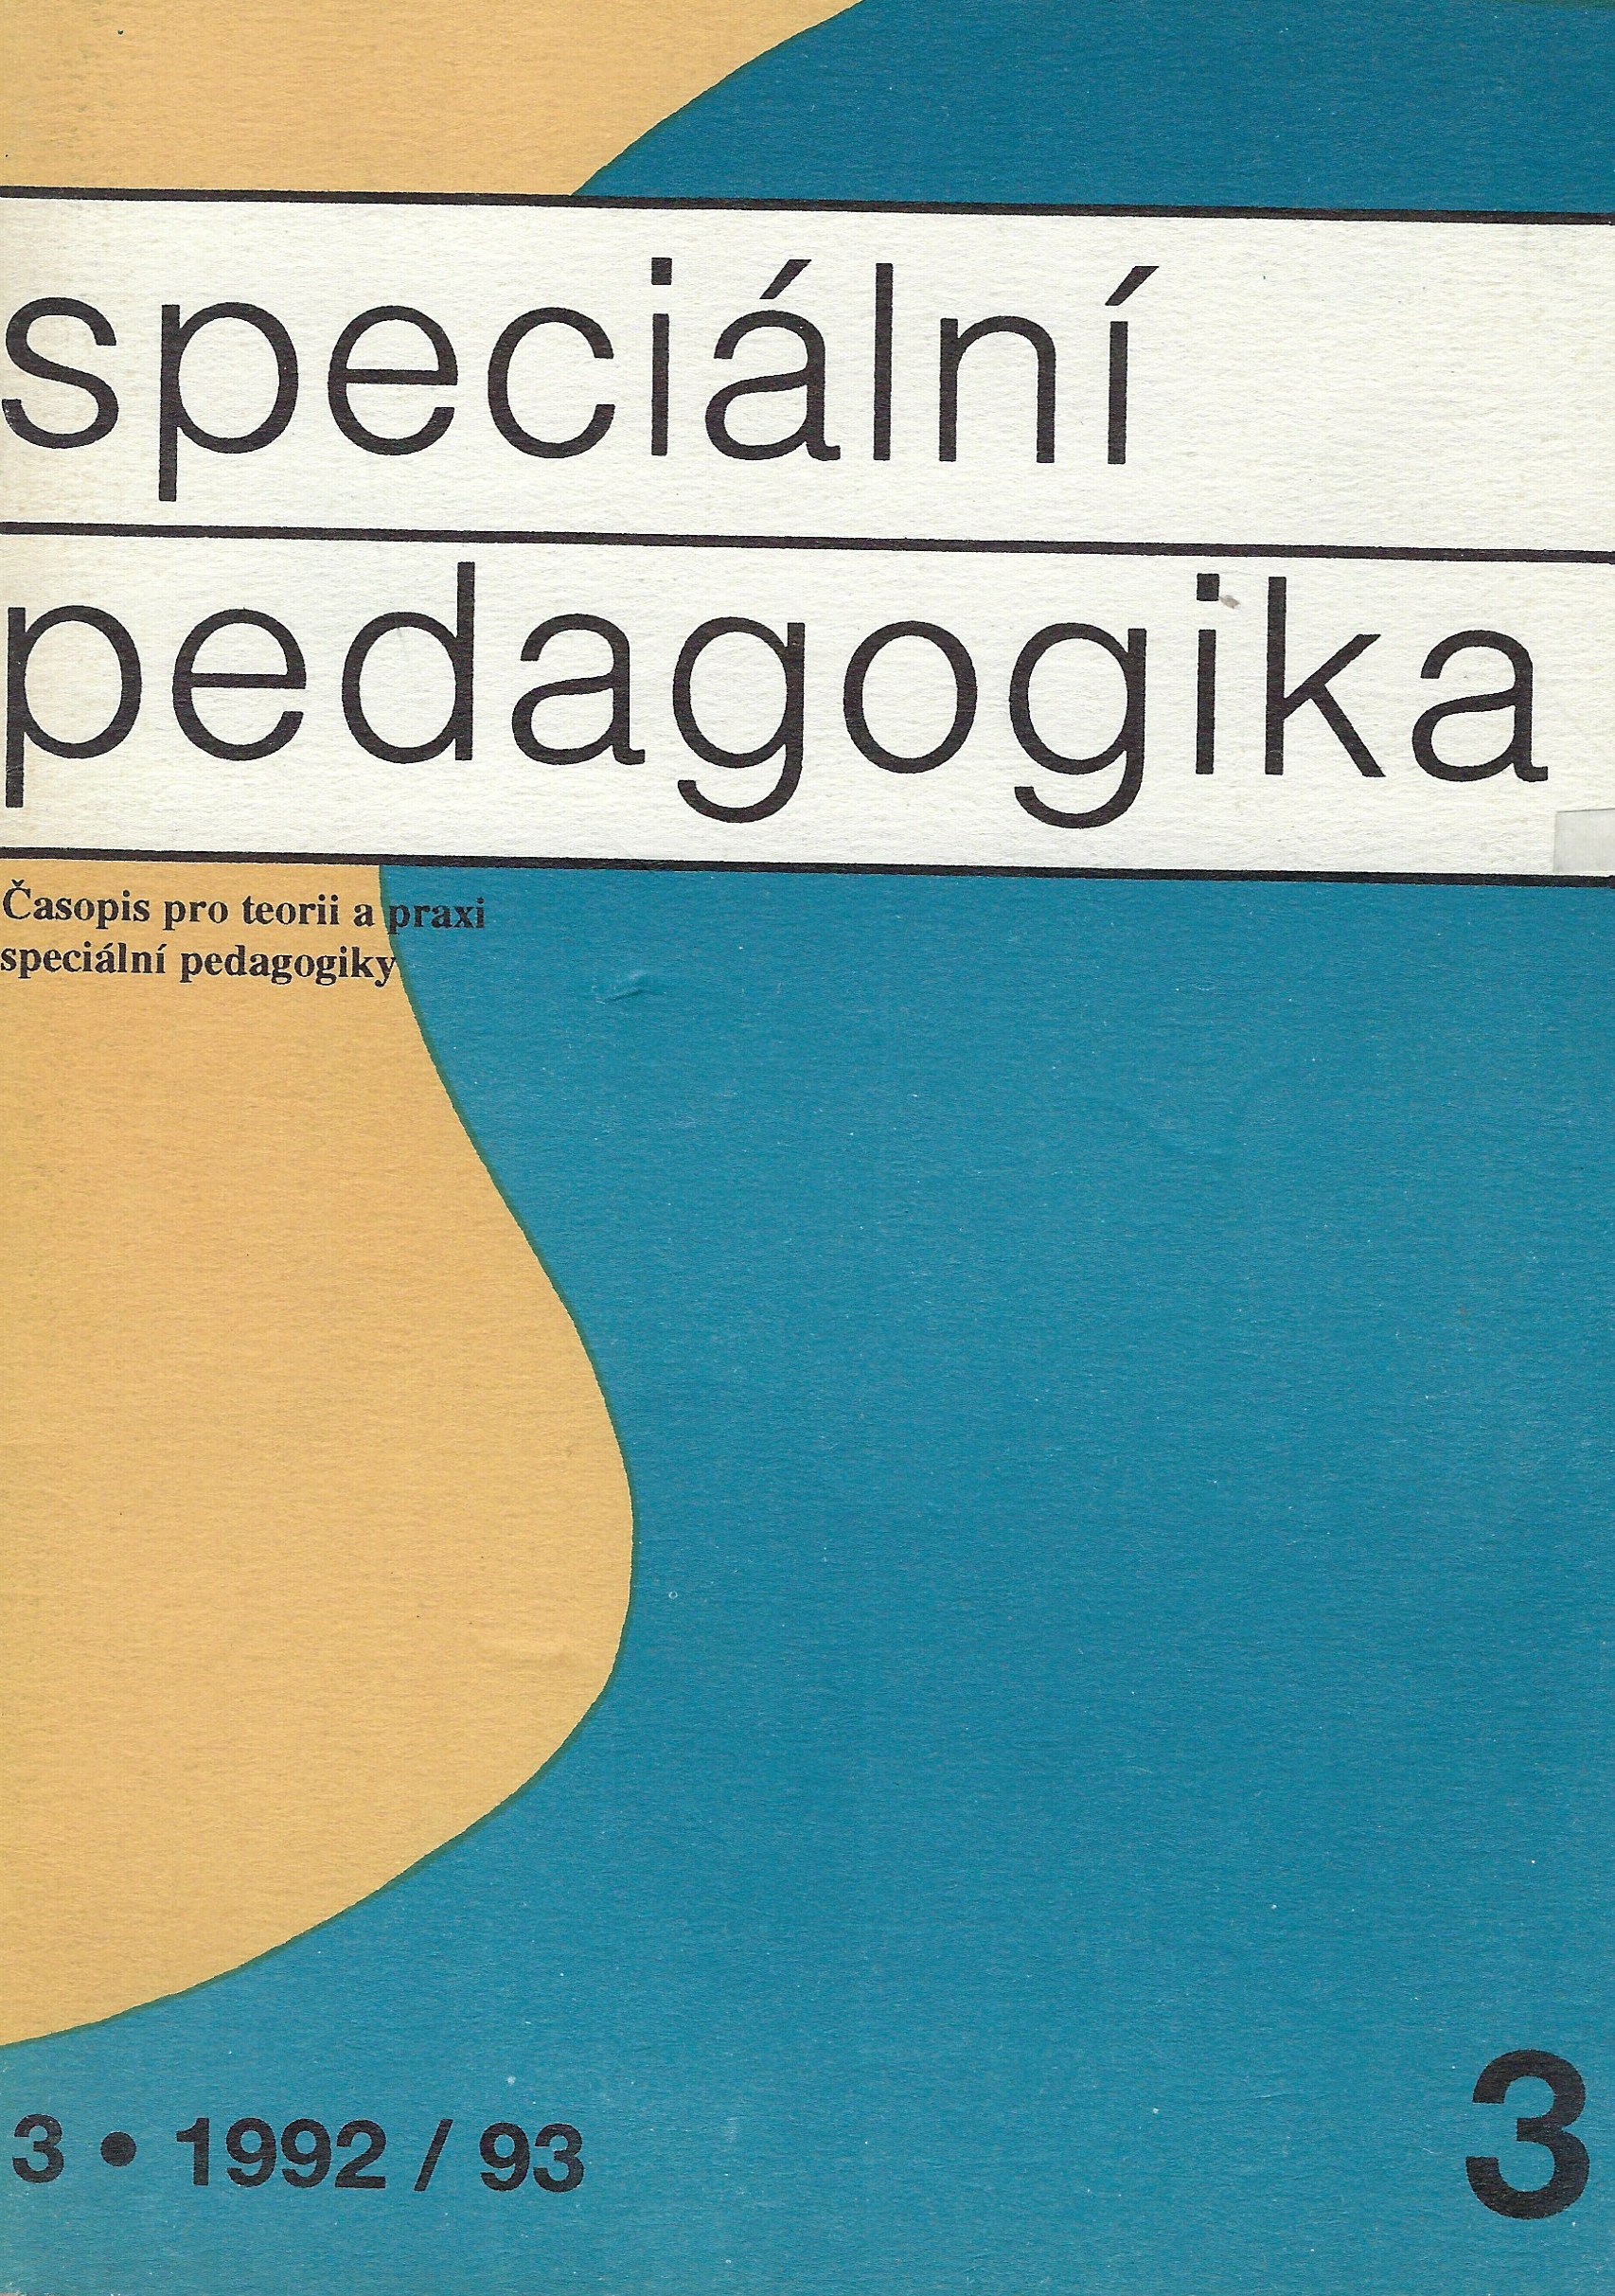 Speciální pedagogika 3-1992/93